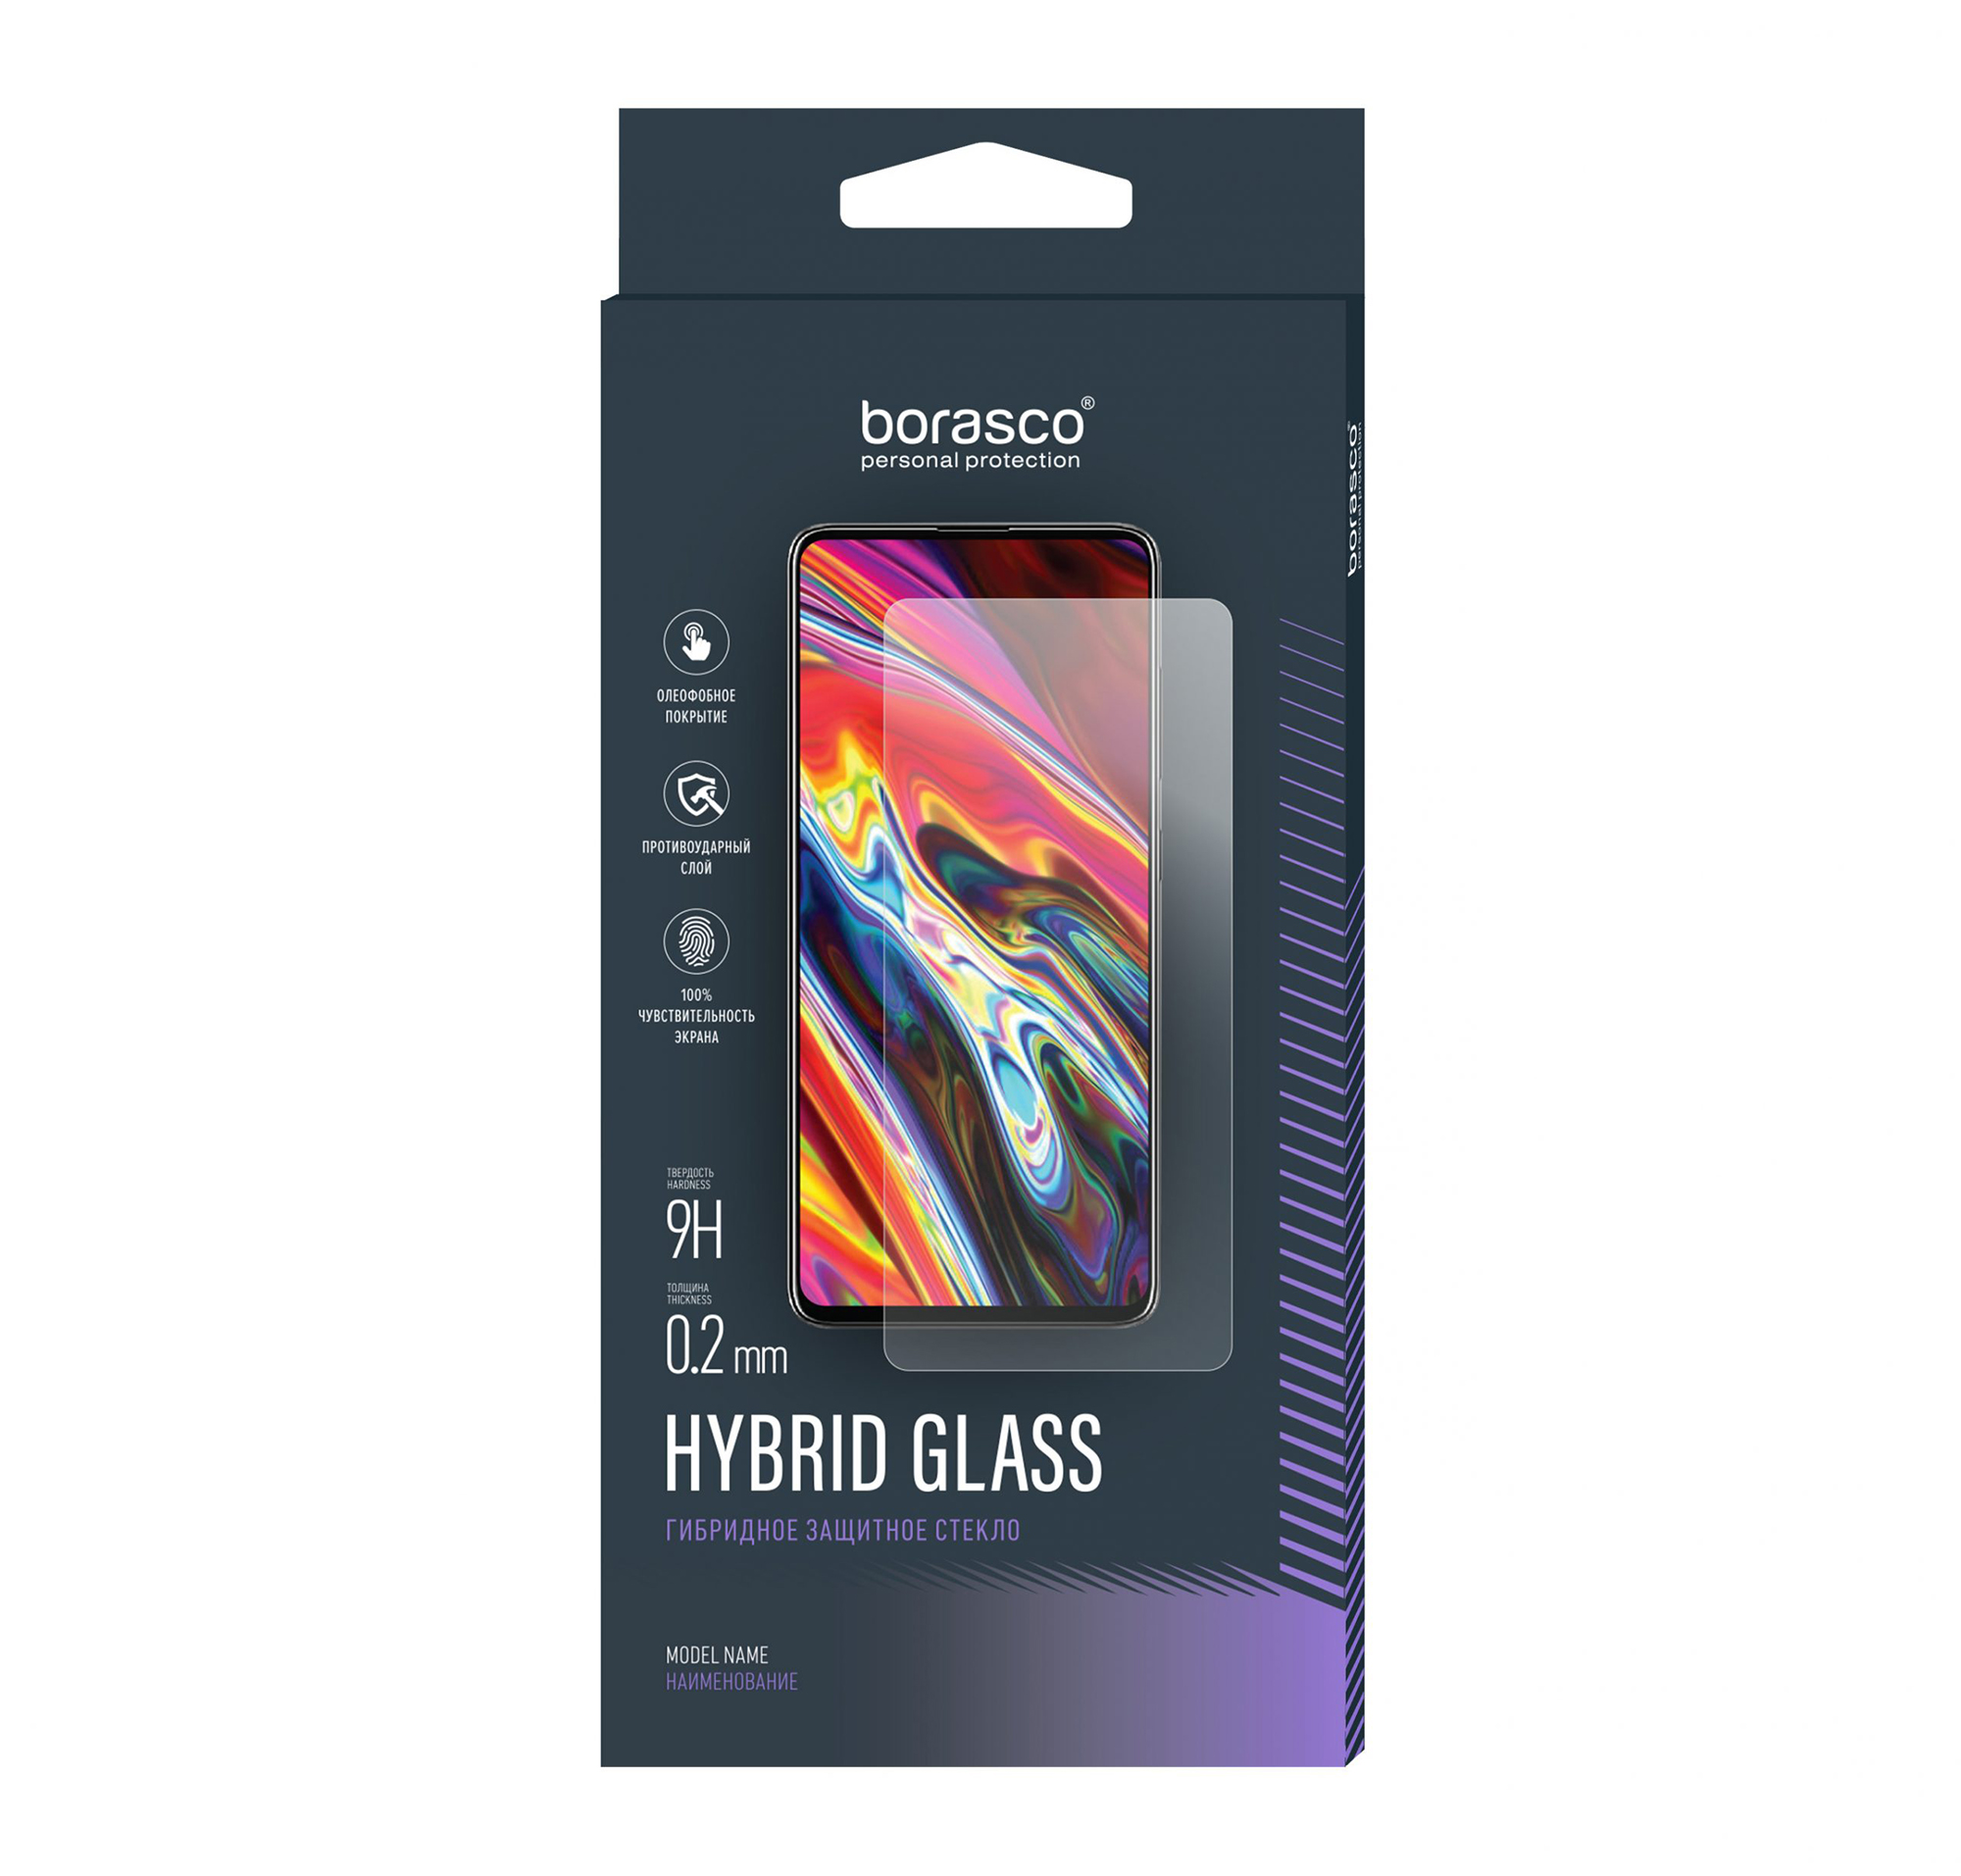 Защитное стекло Hybrid Glass для Prestigio Grace 4791 закаленное защитное стекло для планшета prestigio grace 3318 3g 8 9h взрывозащищенная высококачественная пленка для экрана